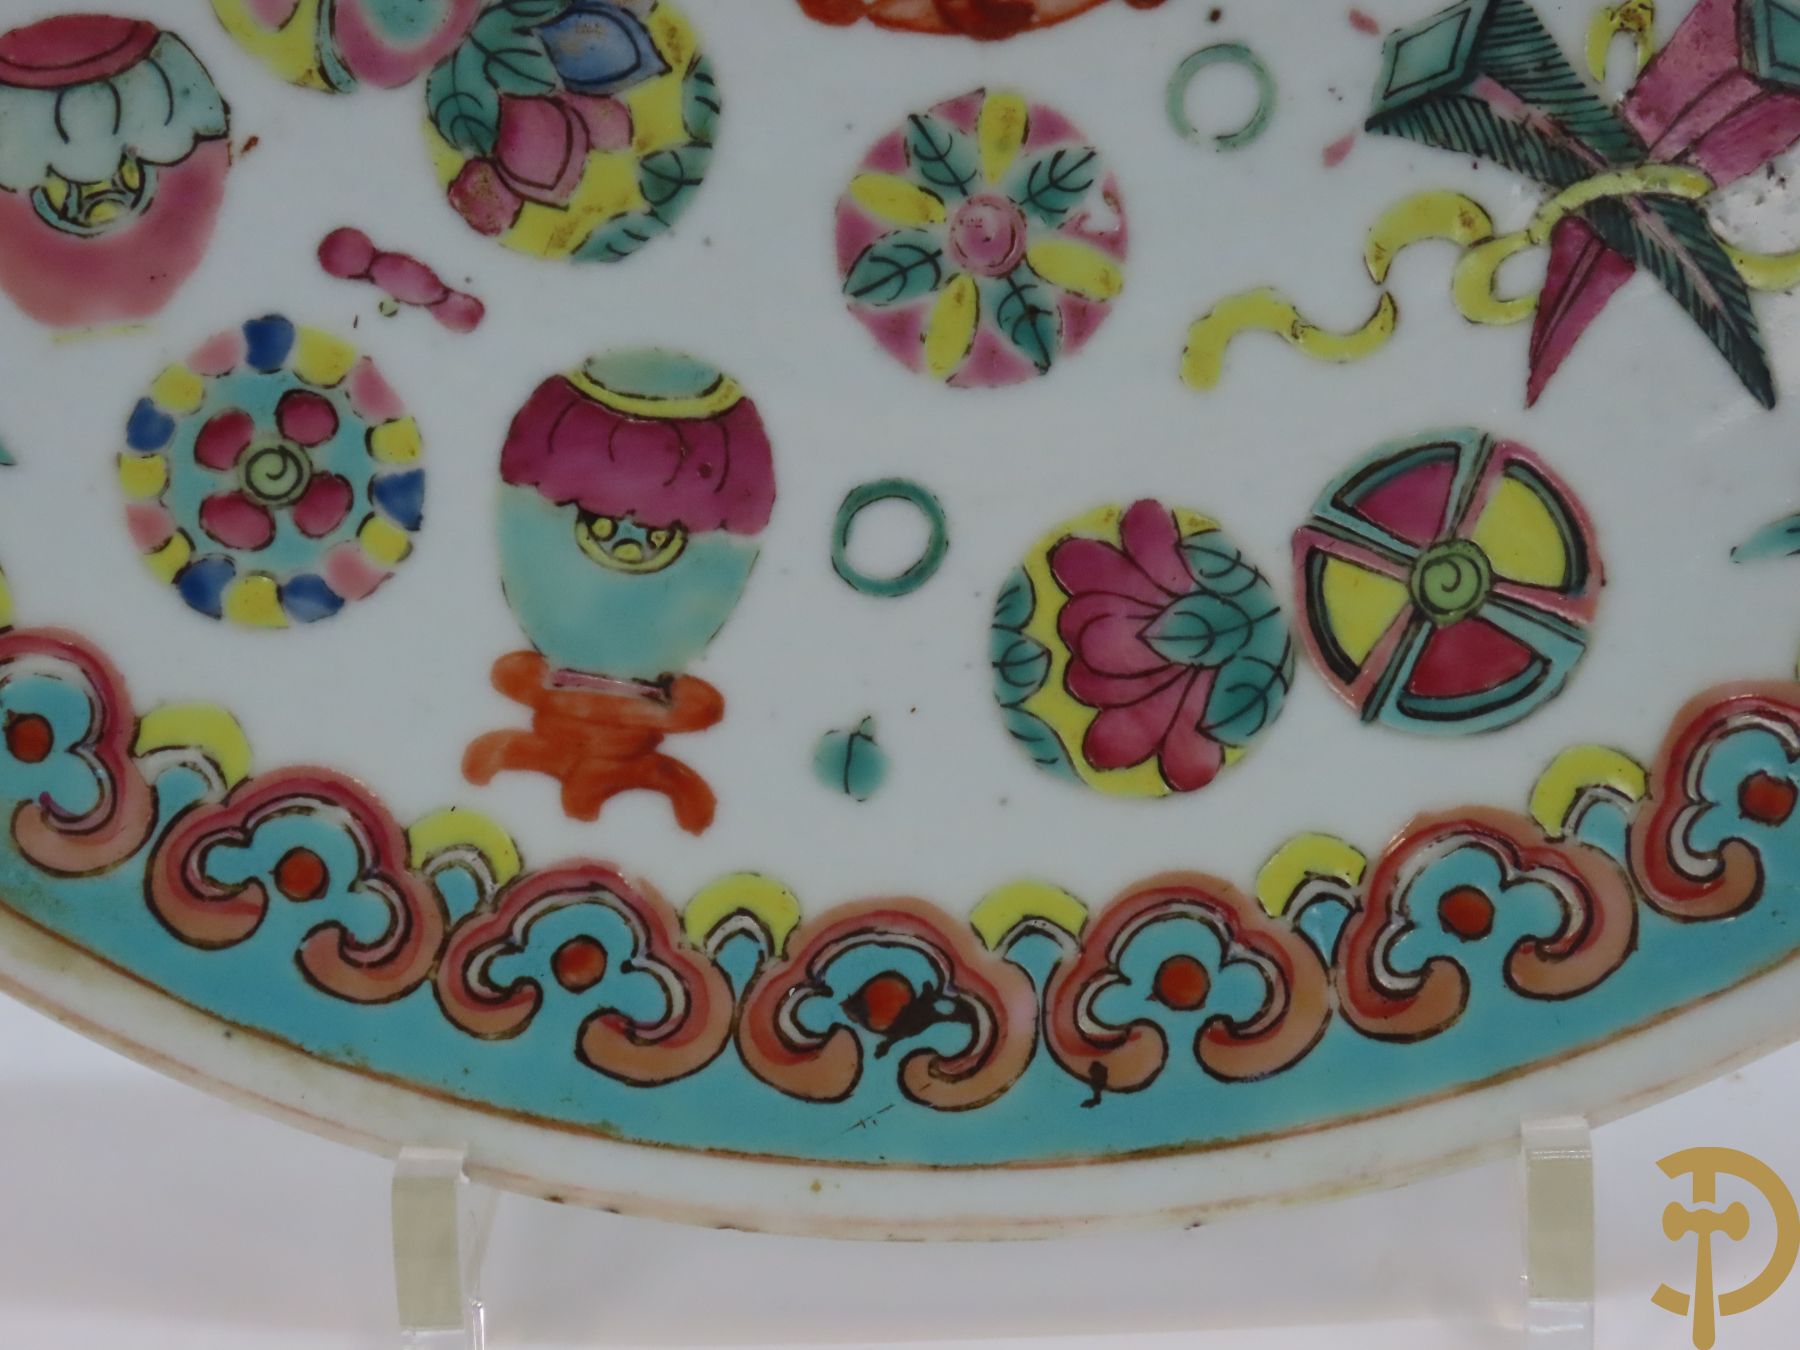 Chinese porseleinen grote schotel met antiquiteitendecor + dekselpotiche met decor van bloemen en Chinese tekens